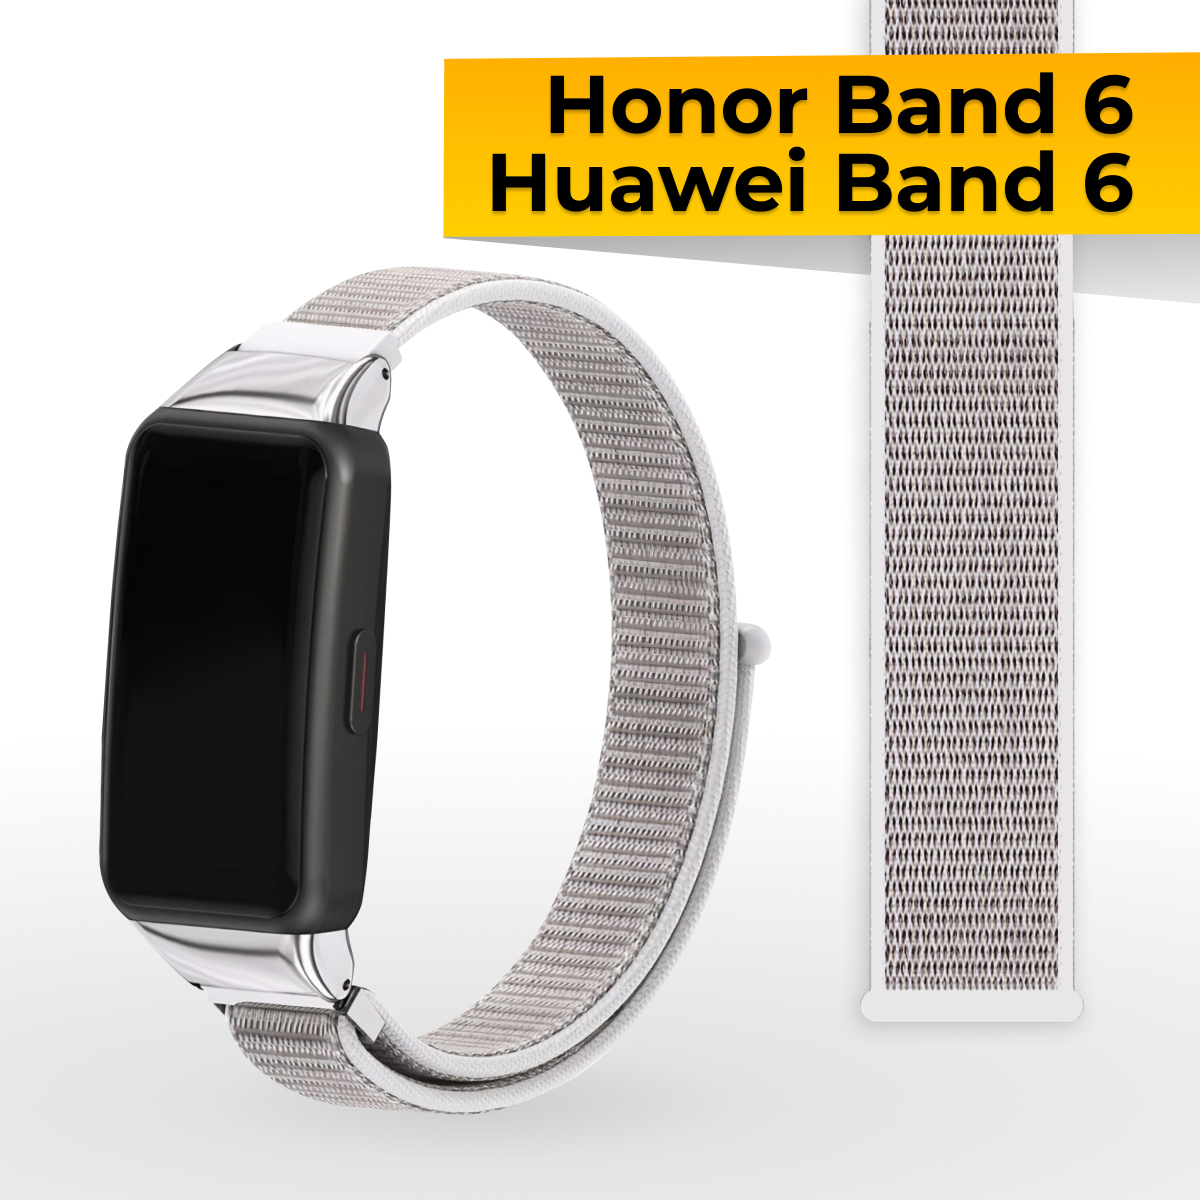 Нейлоновый ремешок для Honor Band 6 и Huawei Band 6 / Спортивный тканевый браслет на липучке для смарт часов Хонор Бэнд, Хуавей Бэнд 6 / Бело-серый